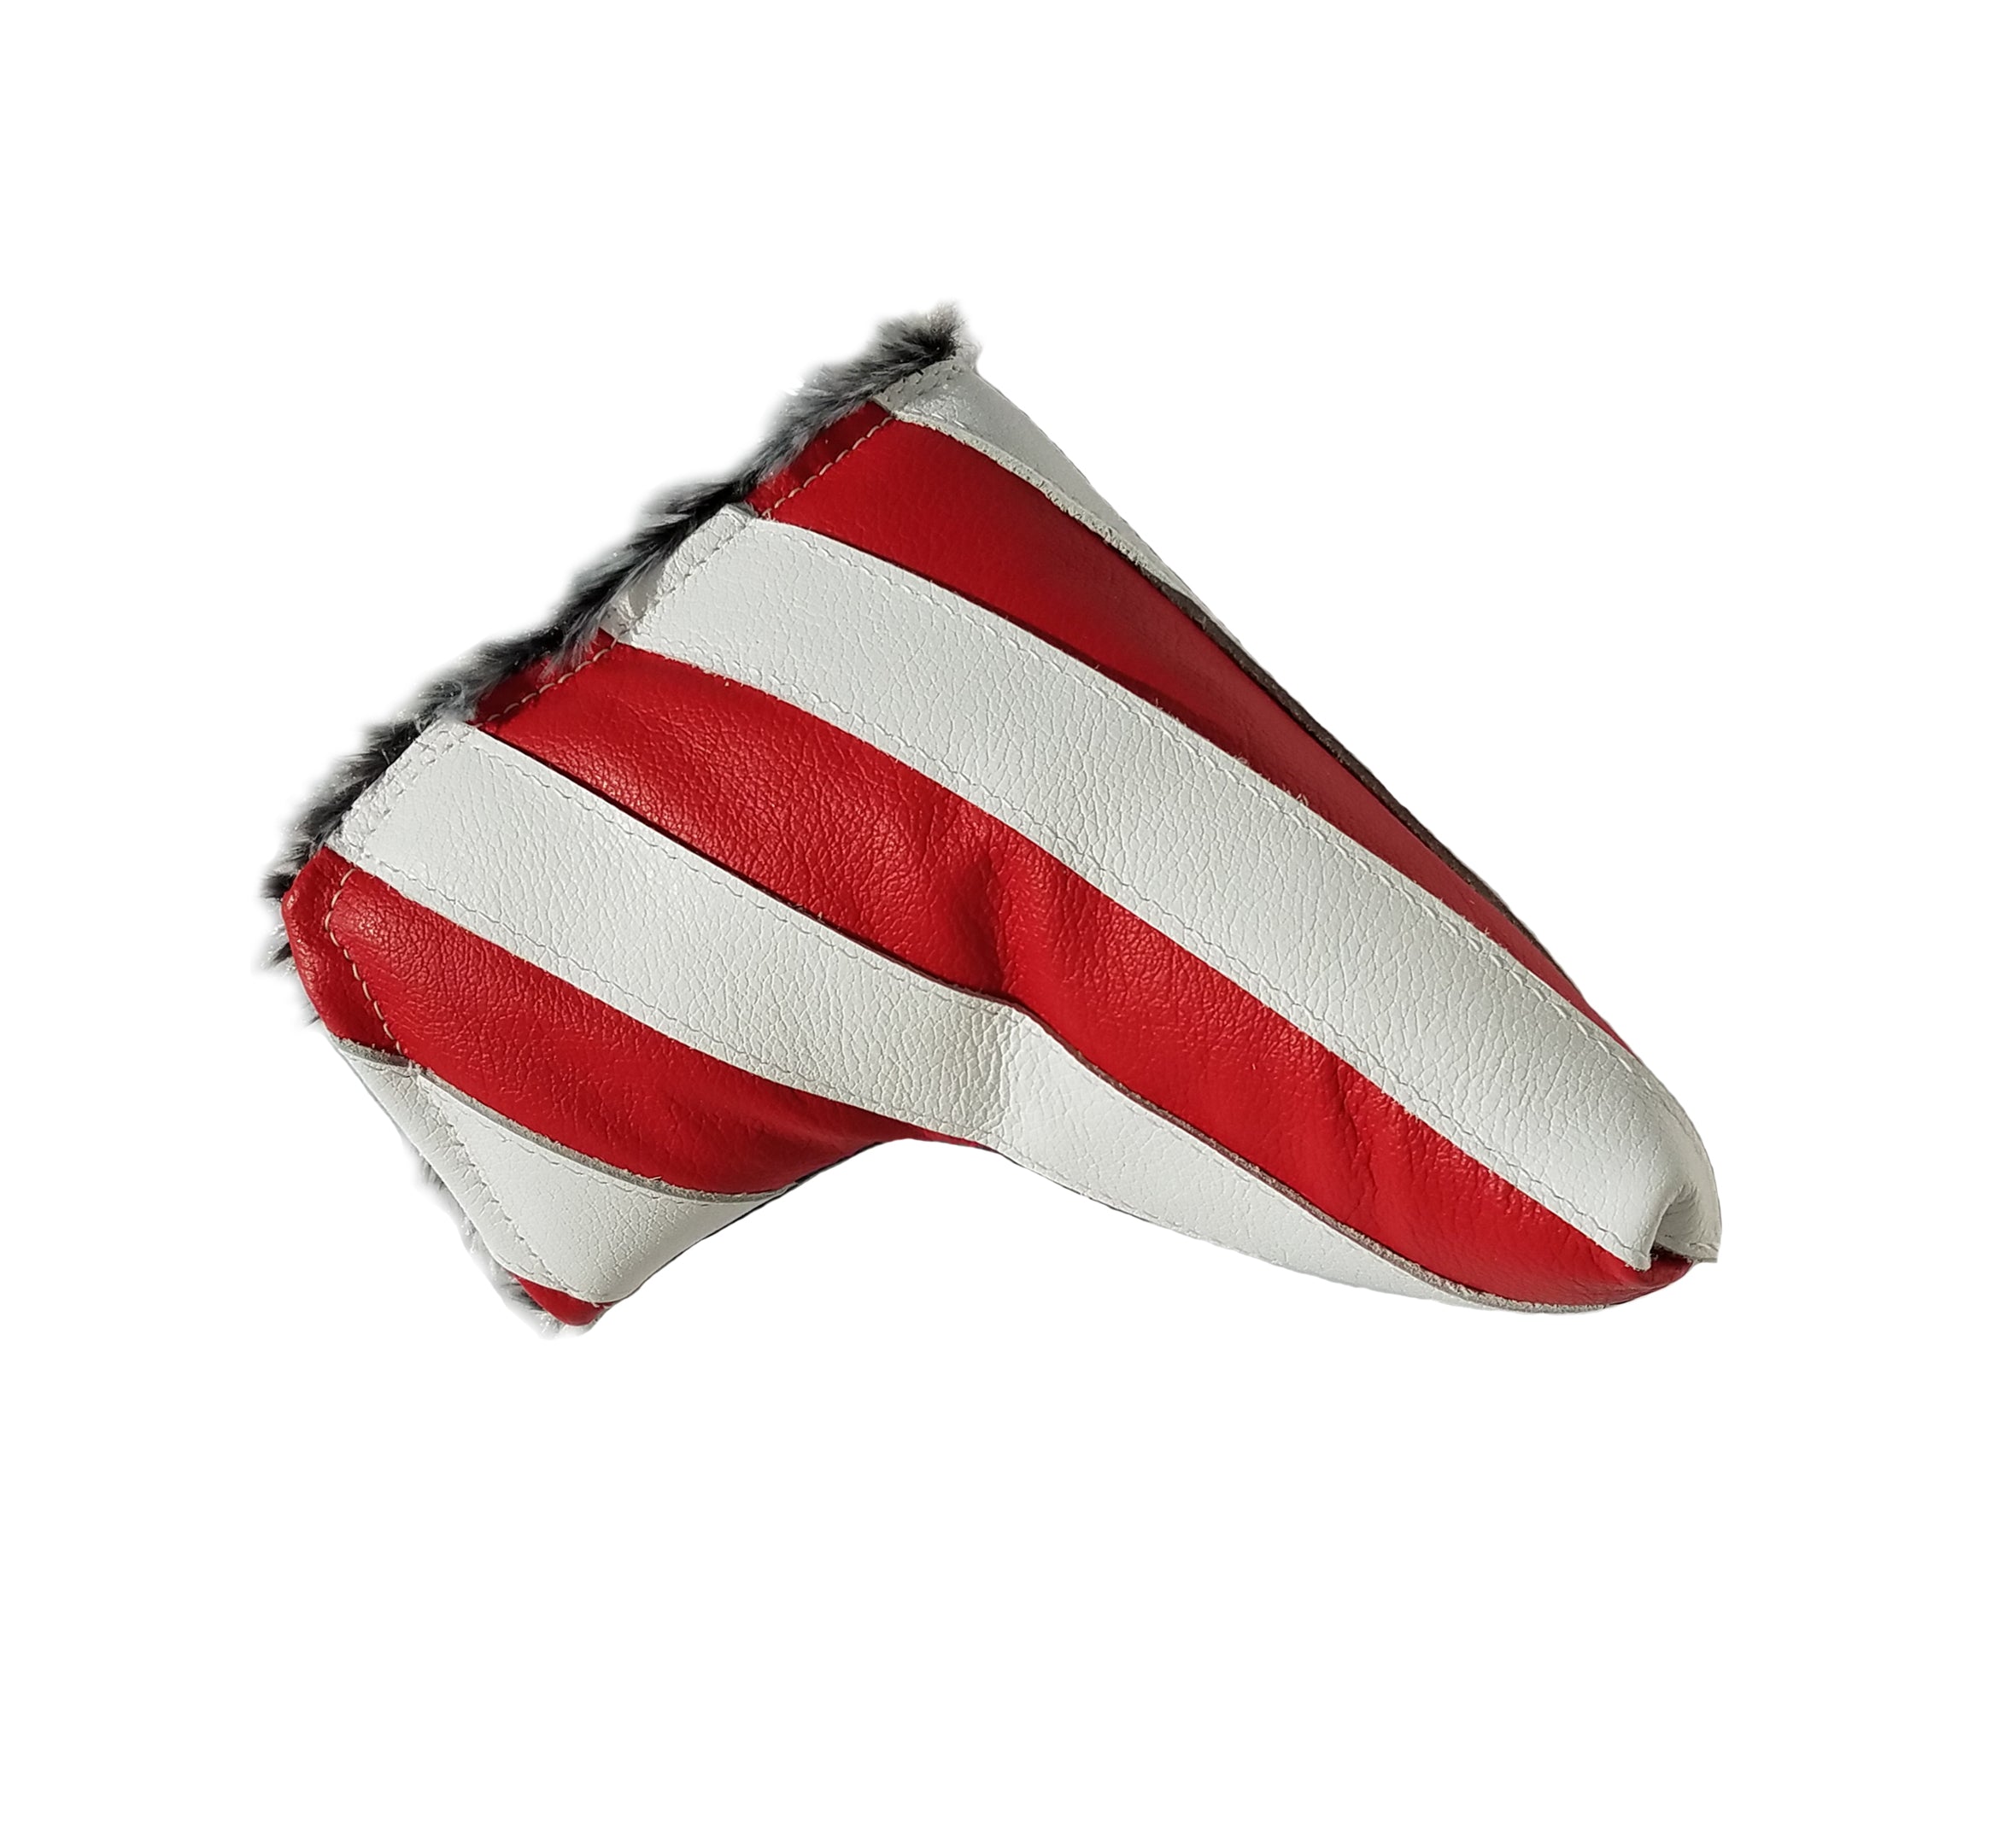 USA Flag Putter Cover - Robert Mark Golf